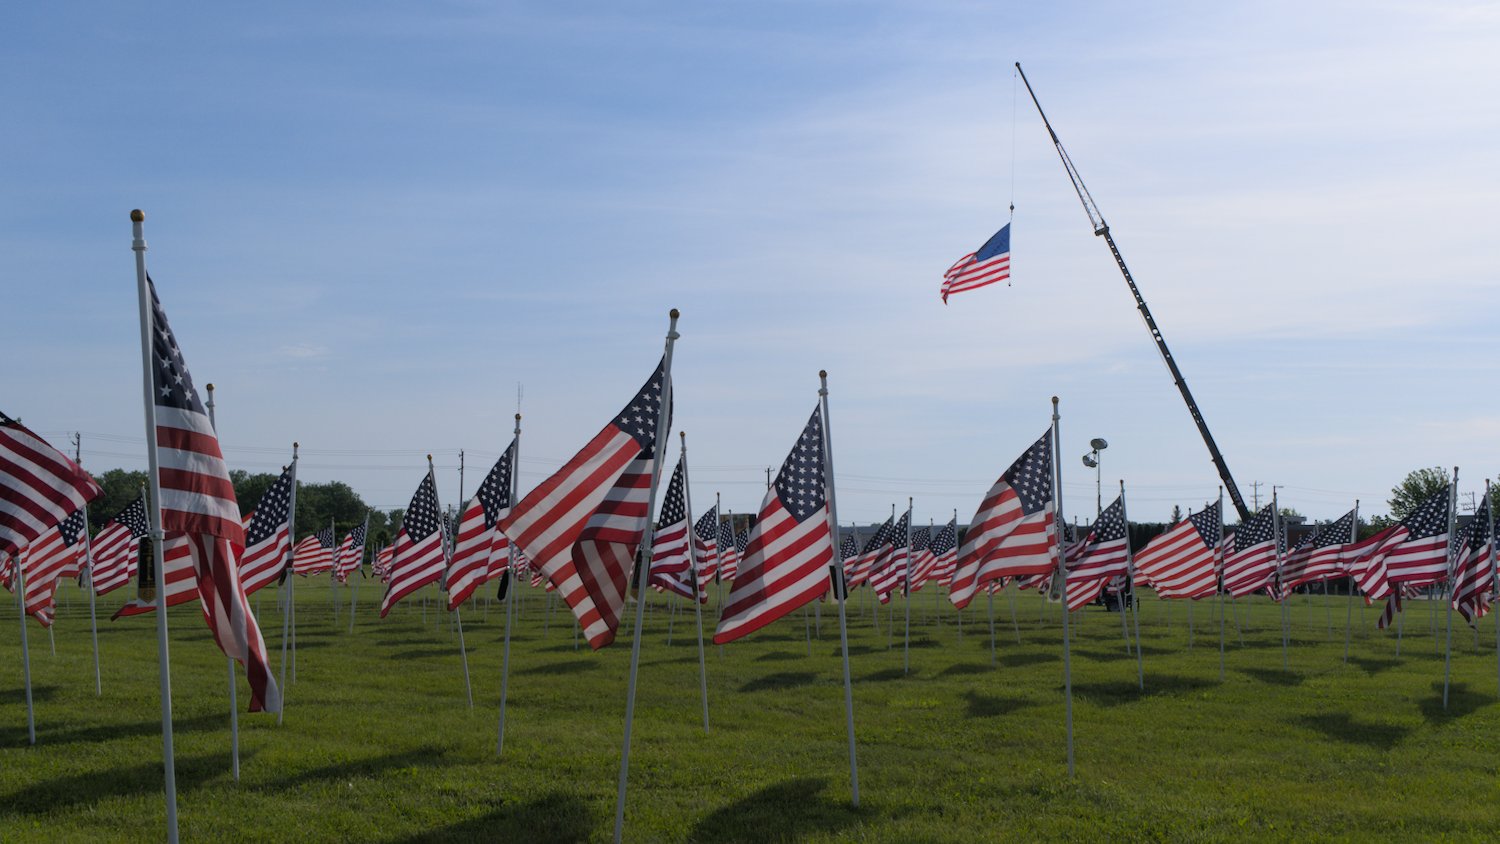 Field of the Fallen U.S. flags.